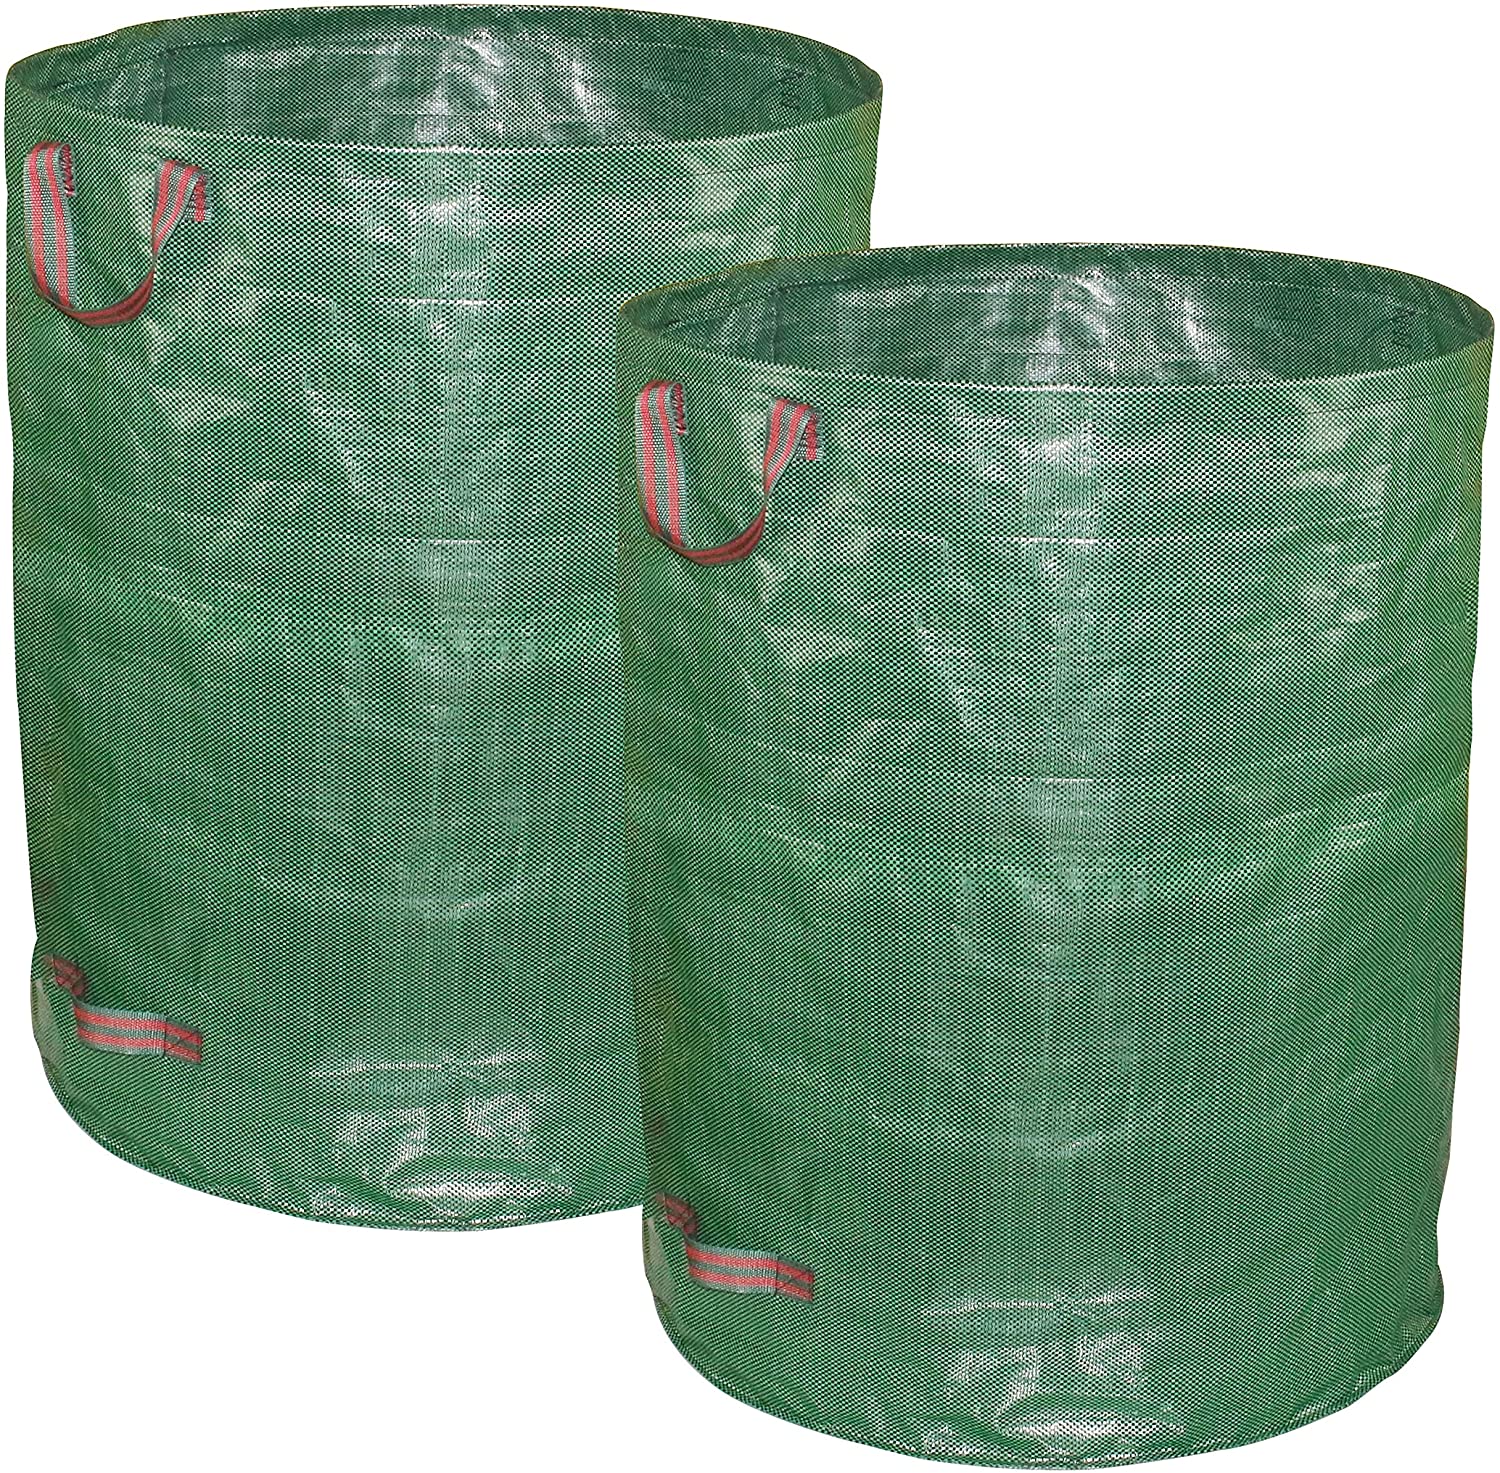 Promotional 3 Pack - Reusable Gardening Leaf Waste Bags/Waterproof Lawn Pool Leaf Yard Bags with 4 Handles